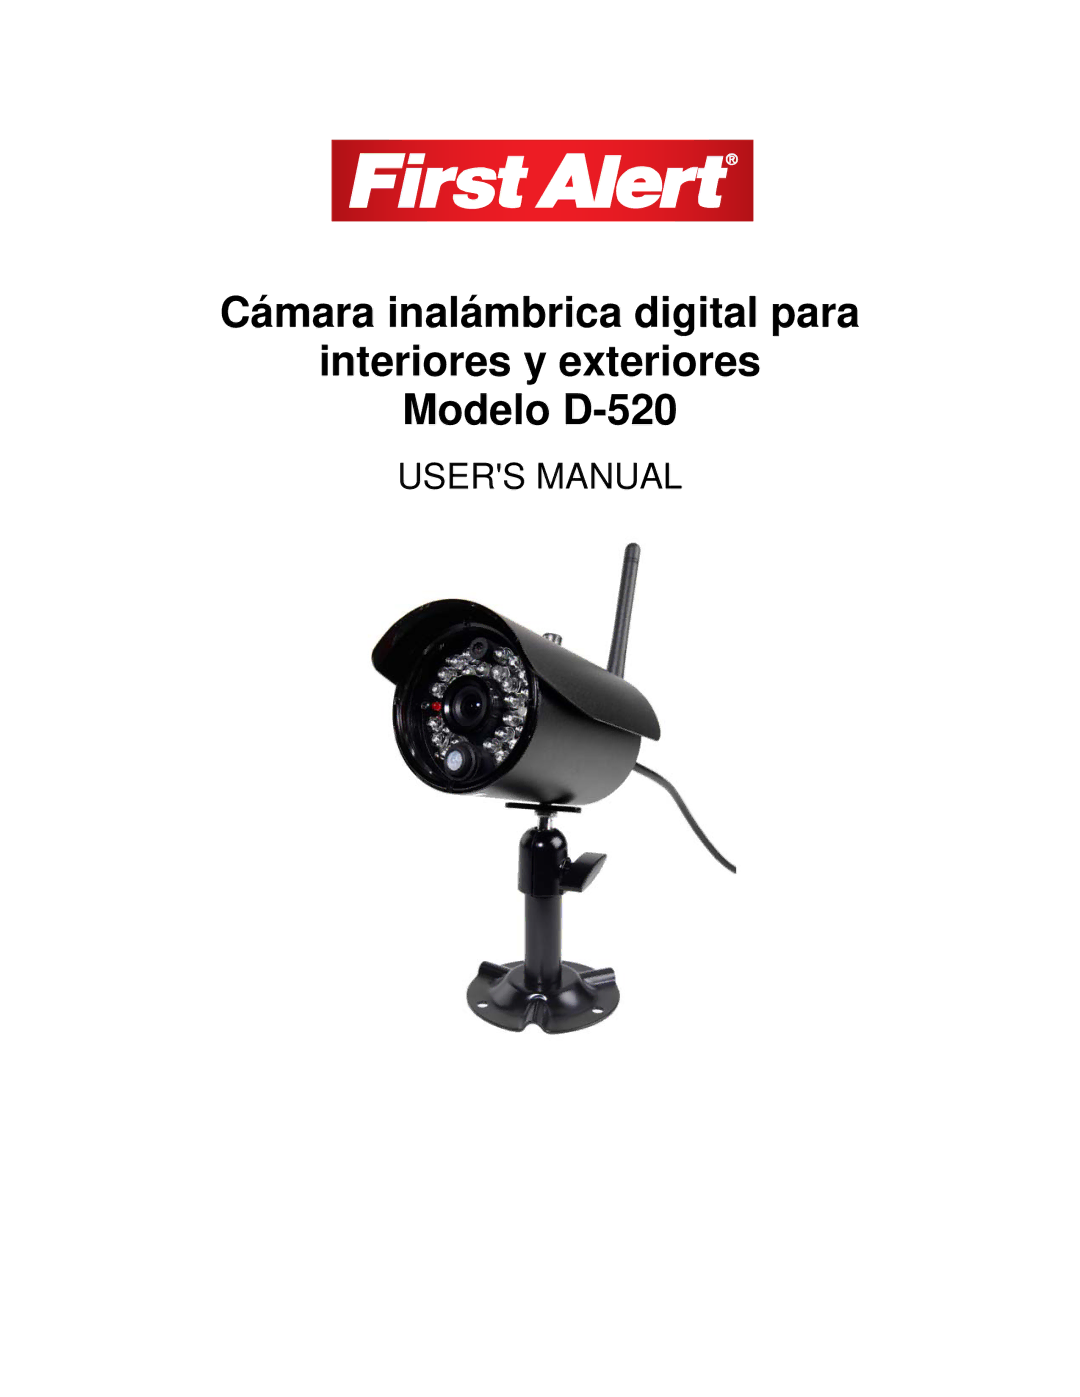 First Alert D-520 user manual 